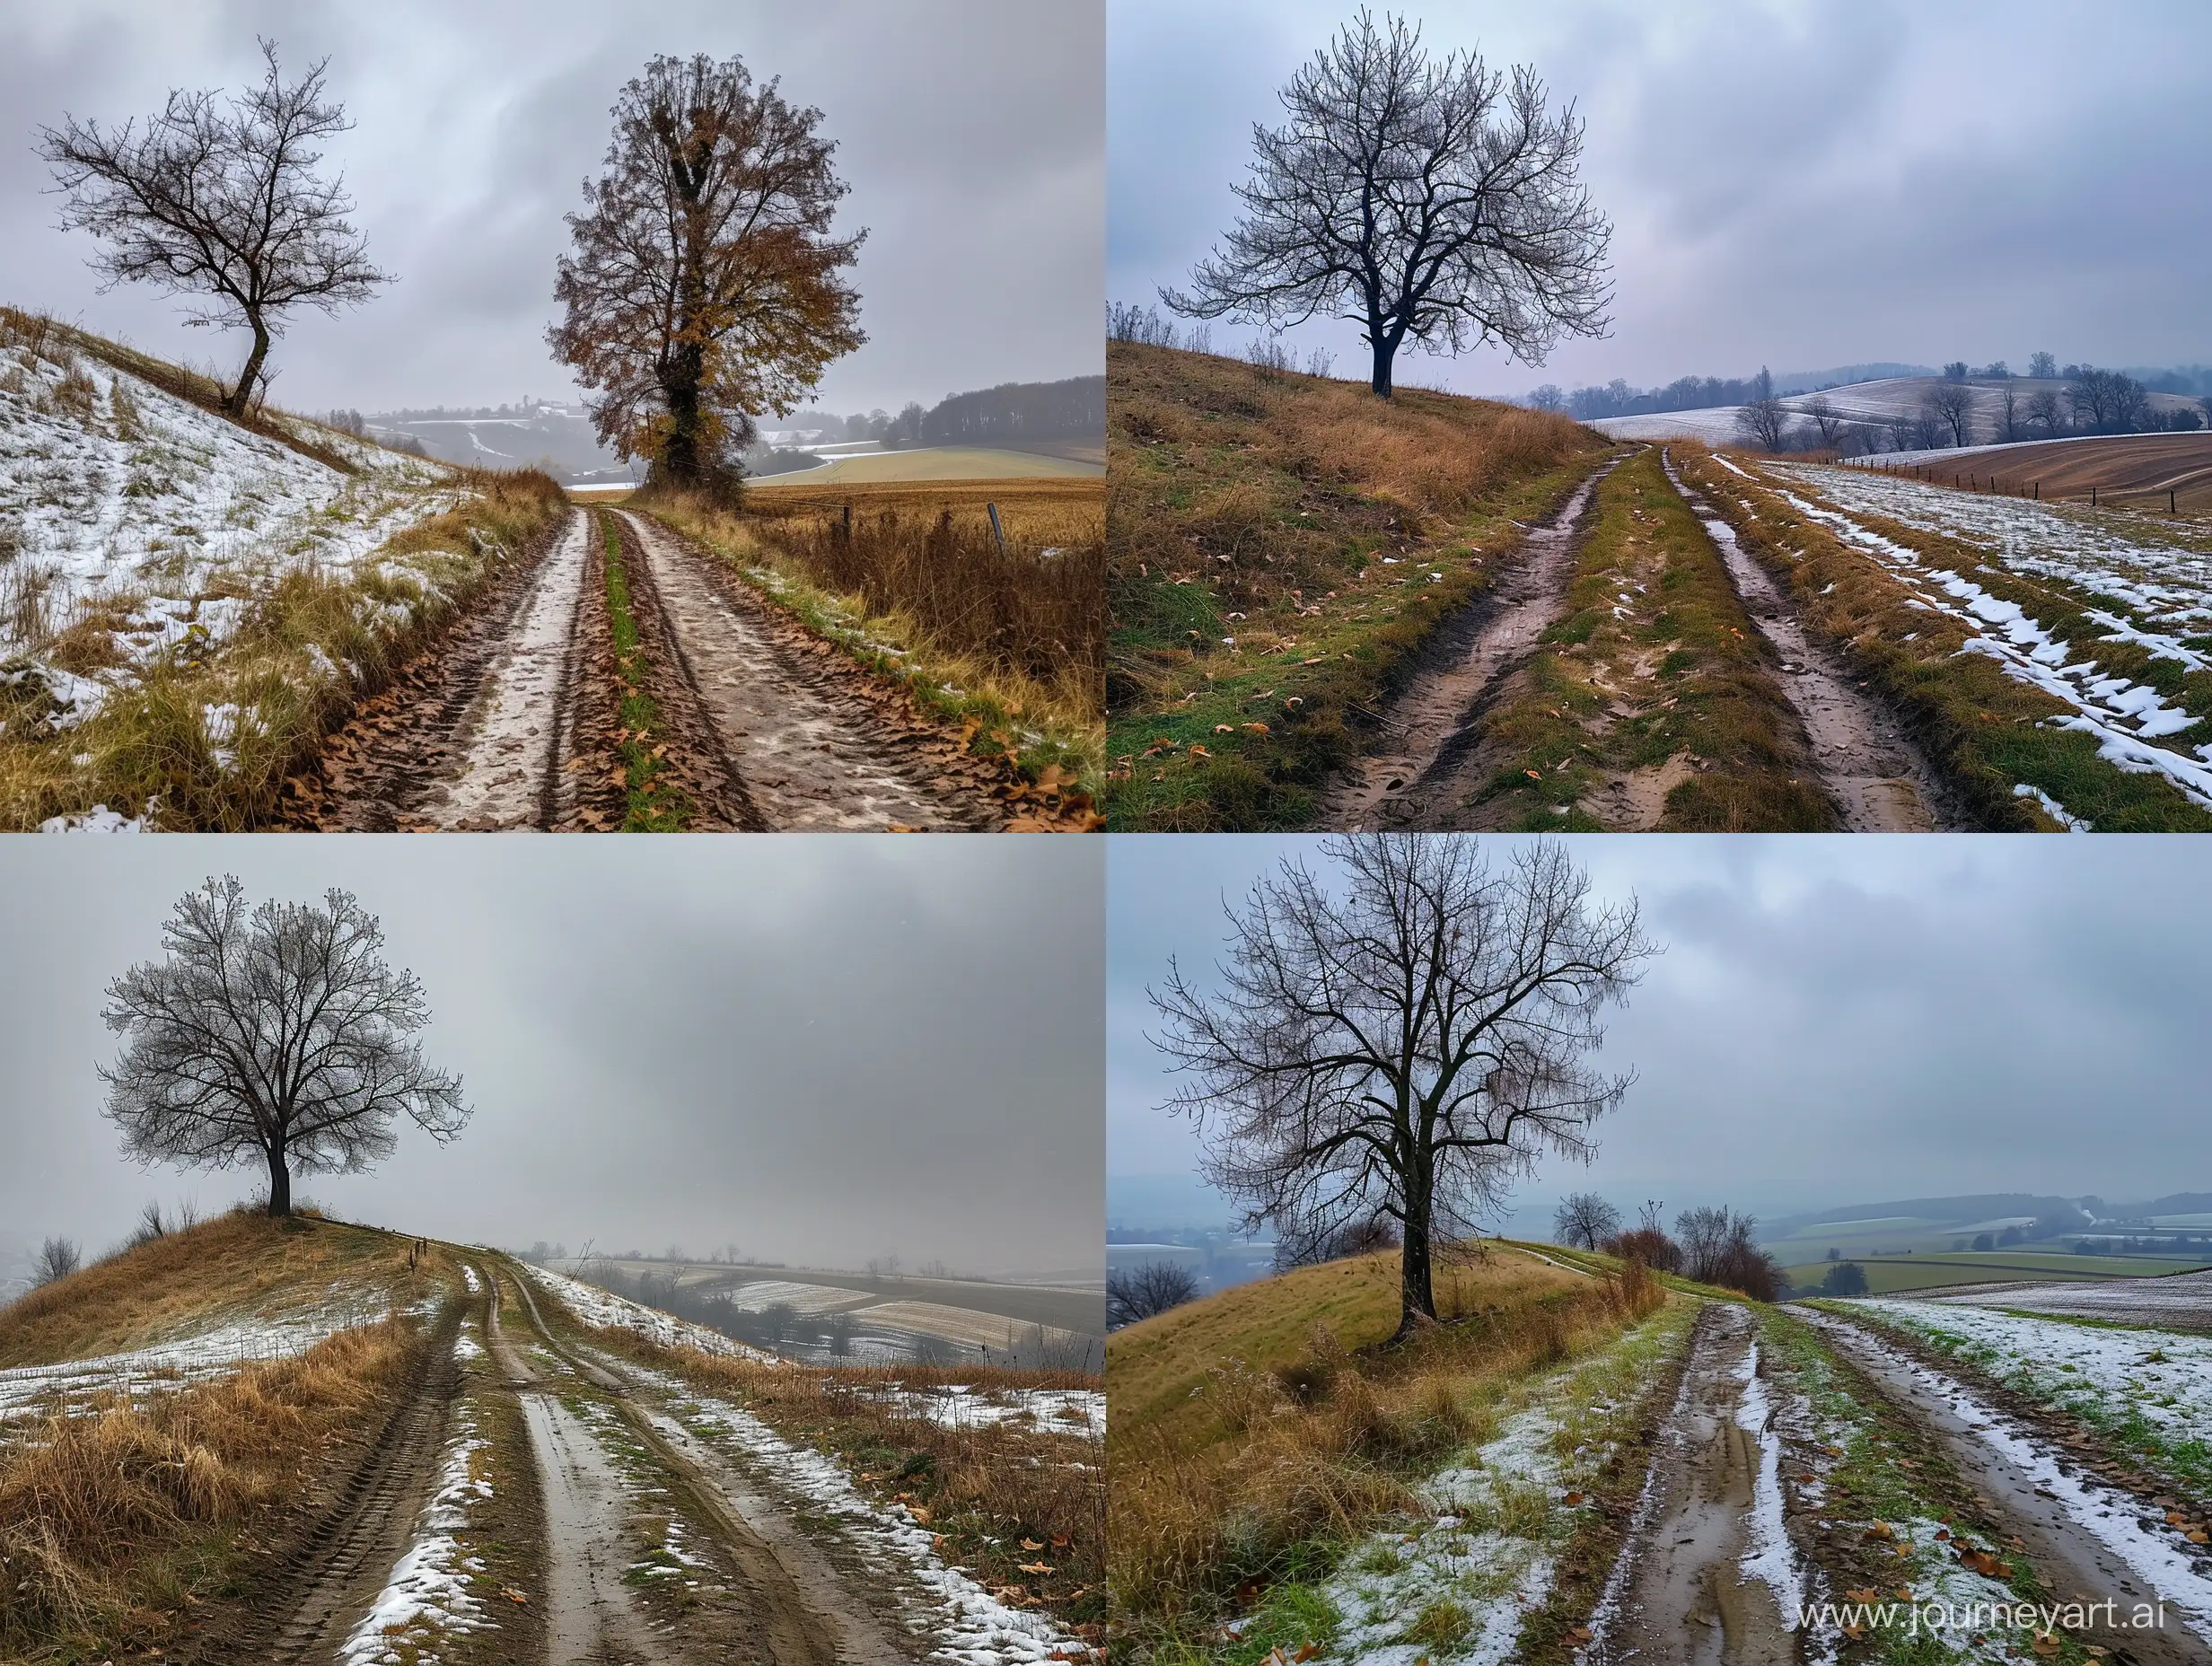 Реалистичное фото природы, поздняя осень, пасмурно, слева на холме дерево без листьев, позëмка, справа деревенская раскисшей дорога, колея, вдалеке поле, частично покрыто снегом